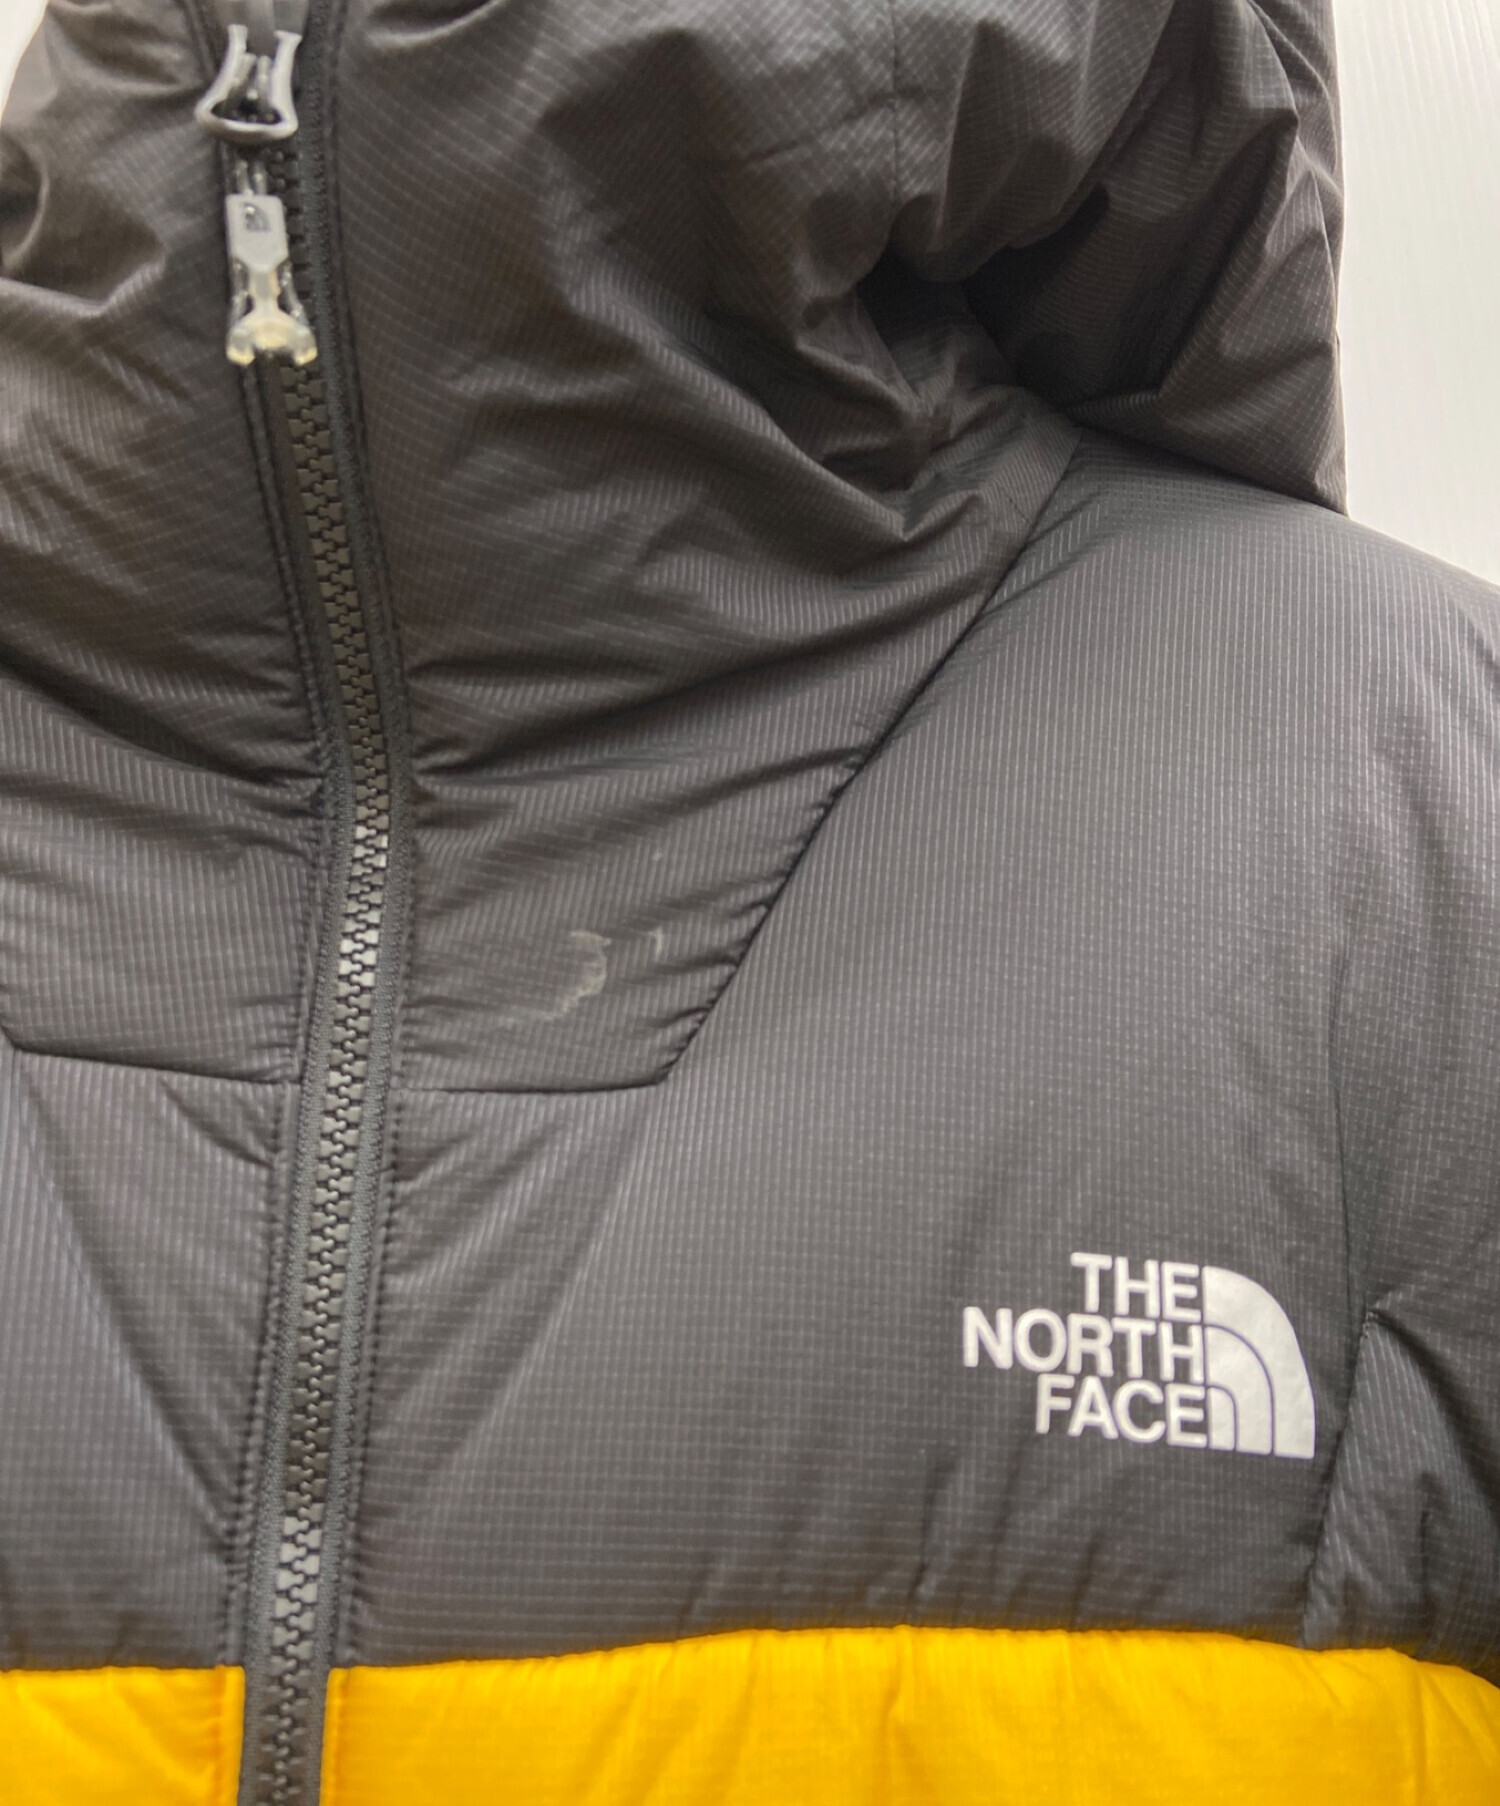 THE NORTH FACE (ザ ノース フェイス) ライモジャケット イエロー×ブラック サイズ:L